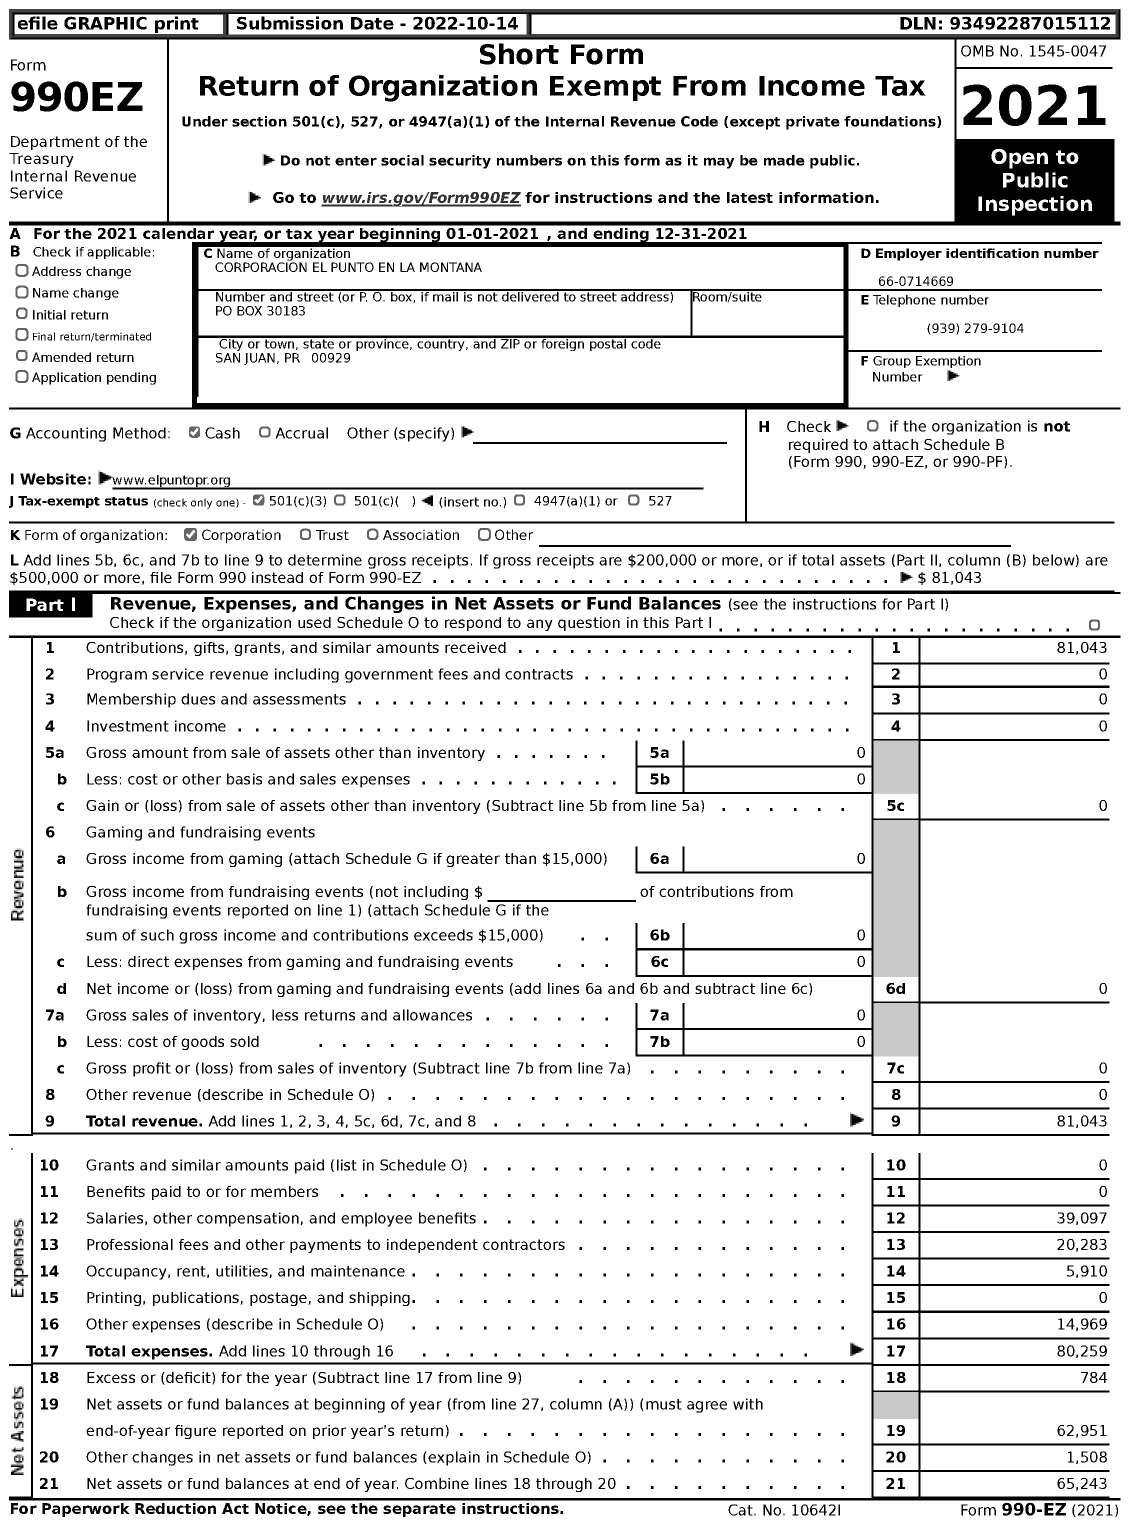 Image of first page of 2021 Form 990EZ for Corporacion El Punto En La Montana